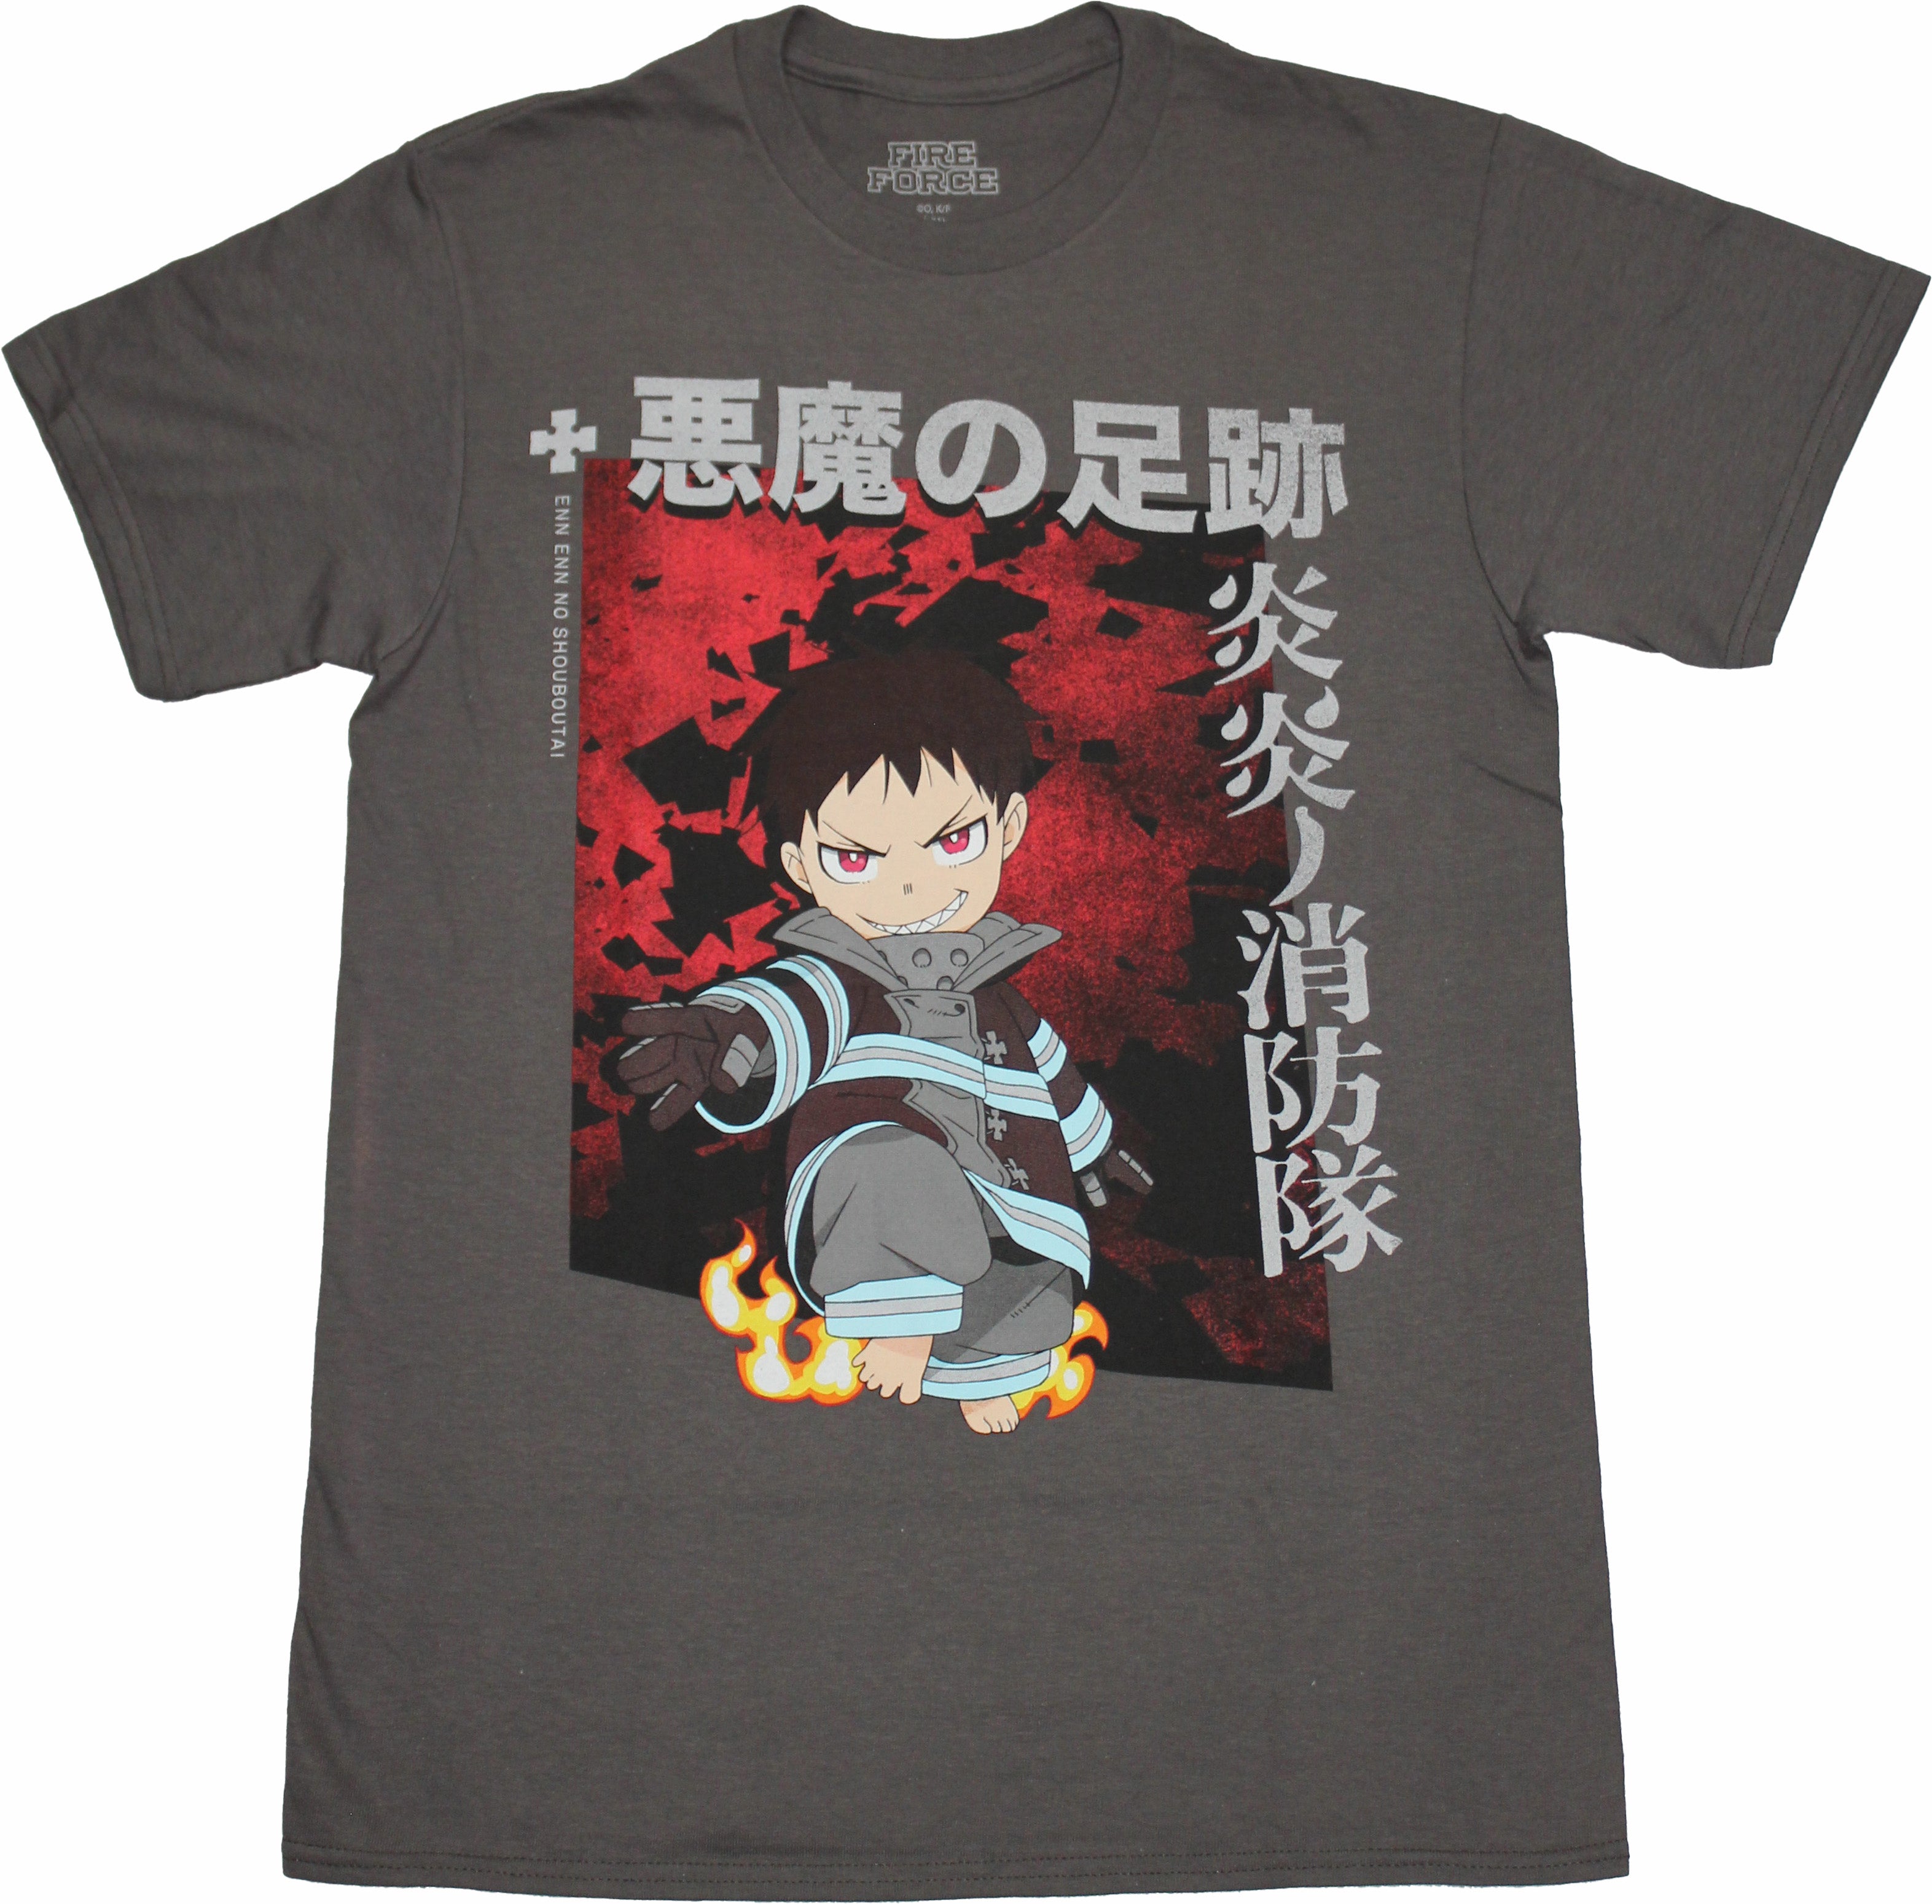 Fire Force Mens T-Shirt - Chibi Style Shinra & Chibi Image